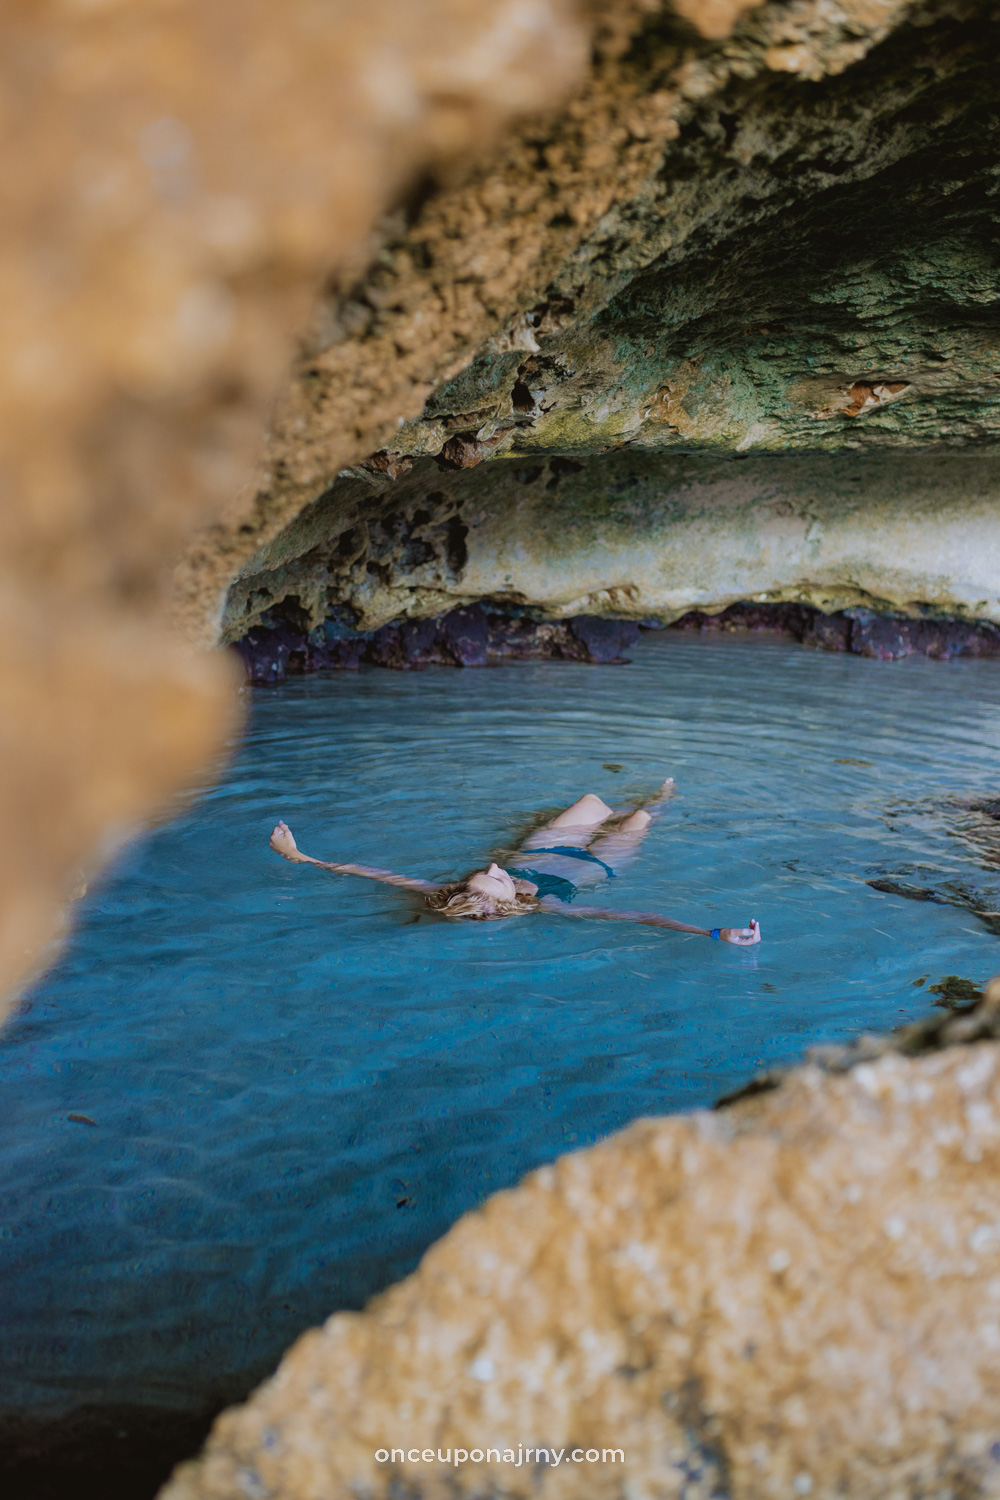 New Cave Pool Aruba at Bushiribana Ruins